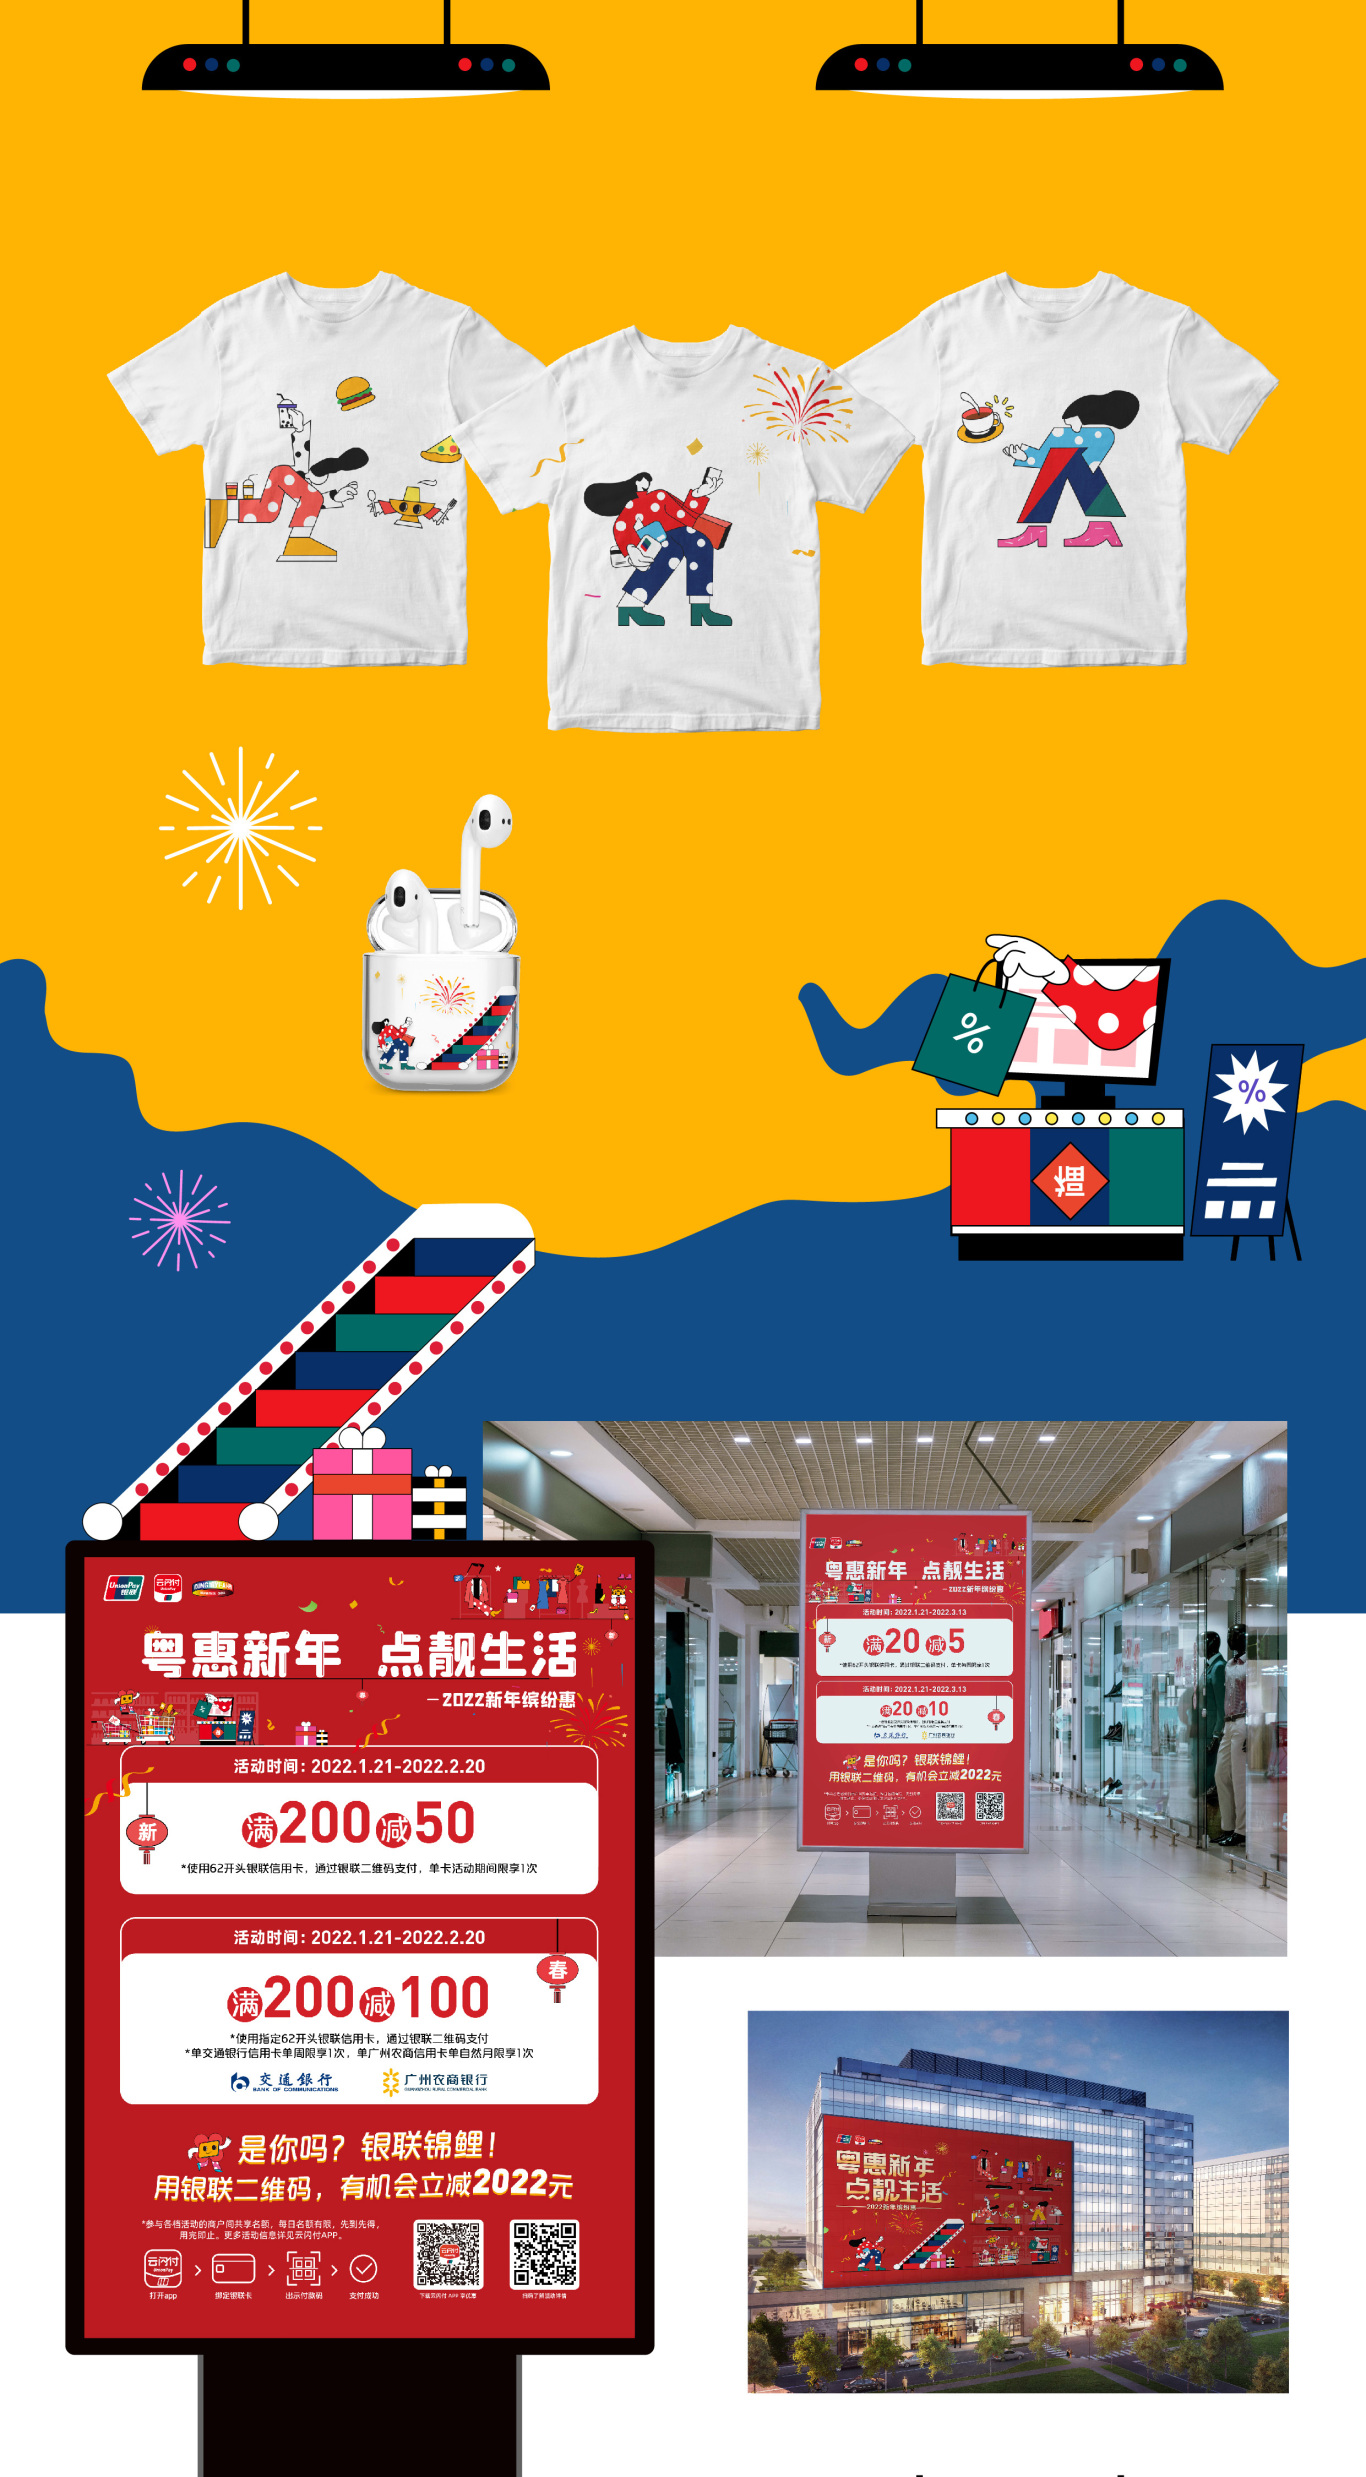 廣東銀聯2022年跨年購物季活動一一粵惠新年，點靚生活圖2